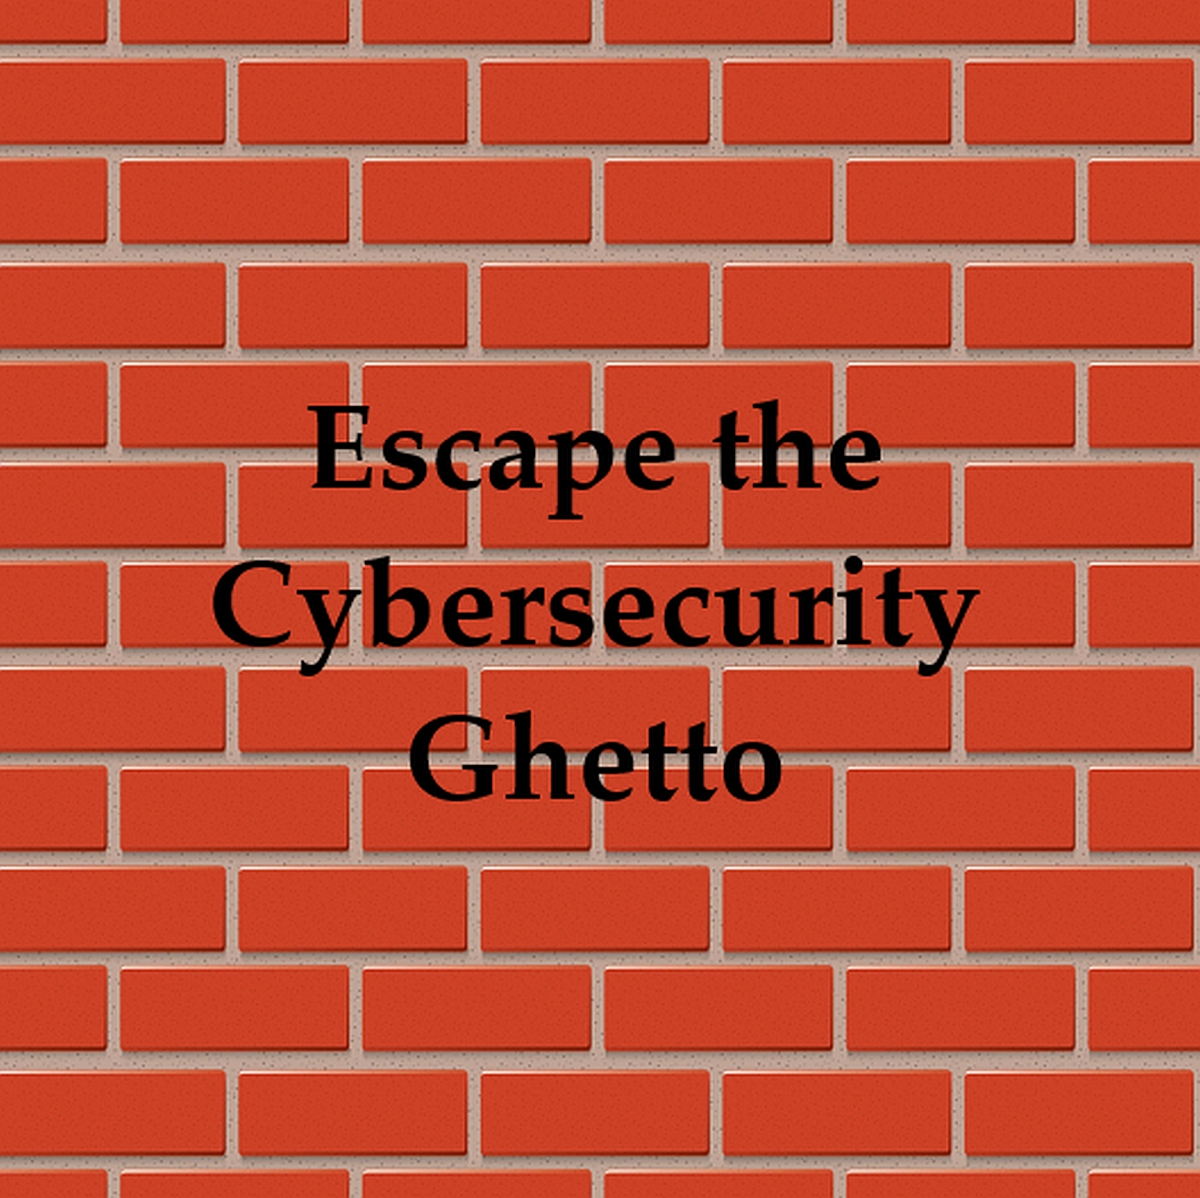 Escape the Cybersecurity Ghetto